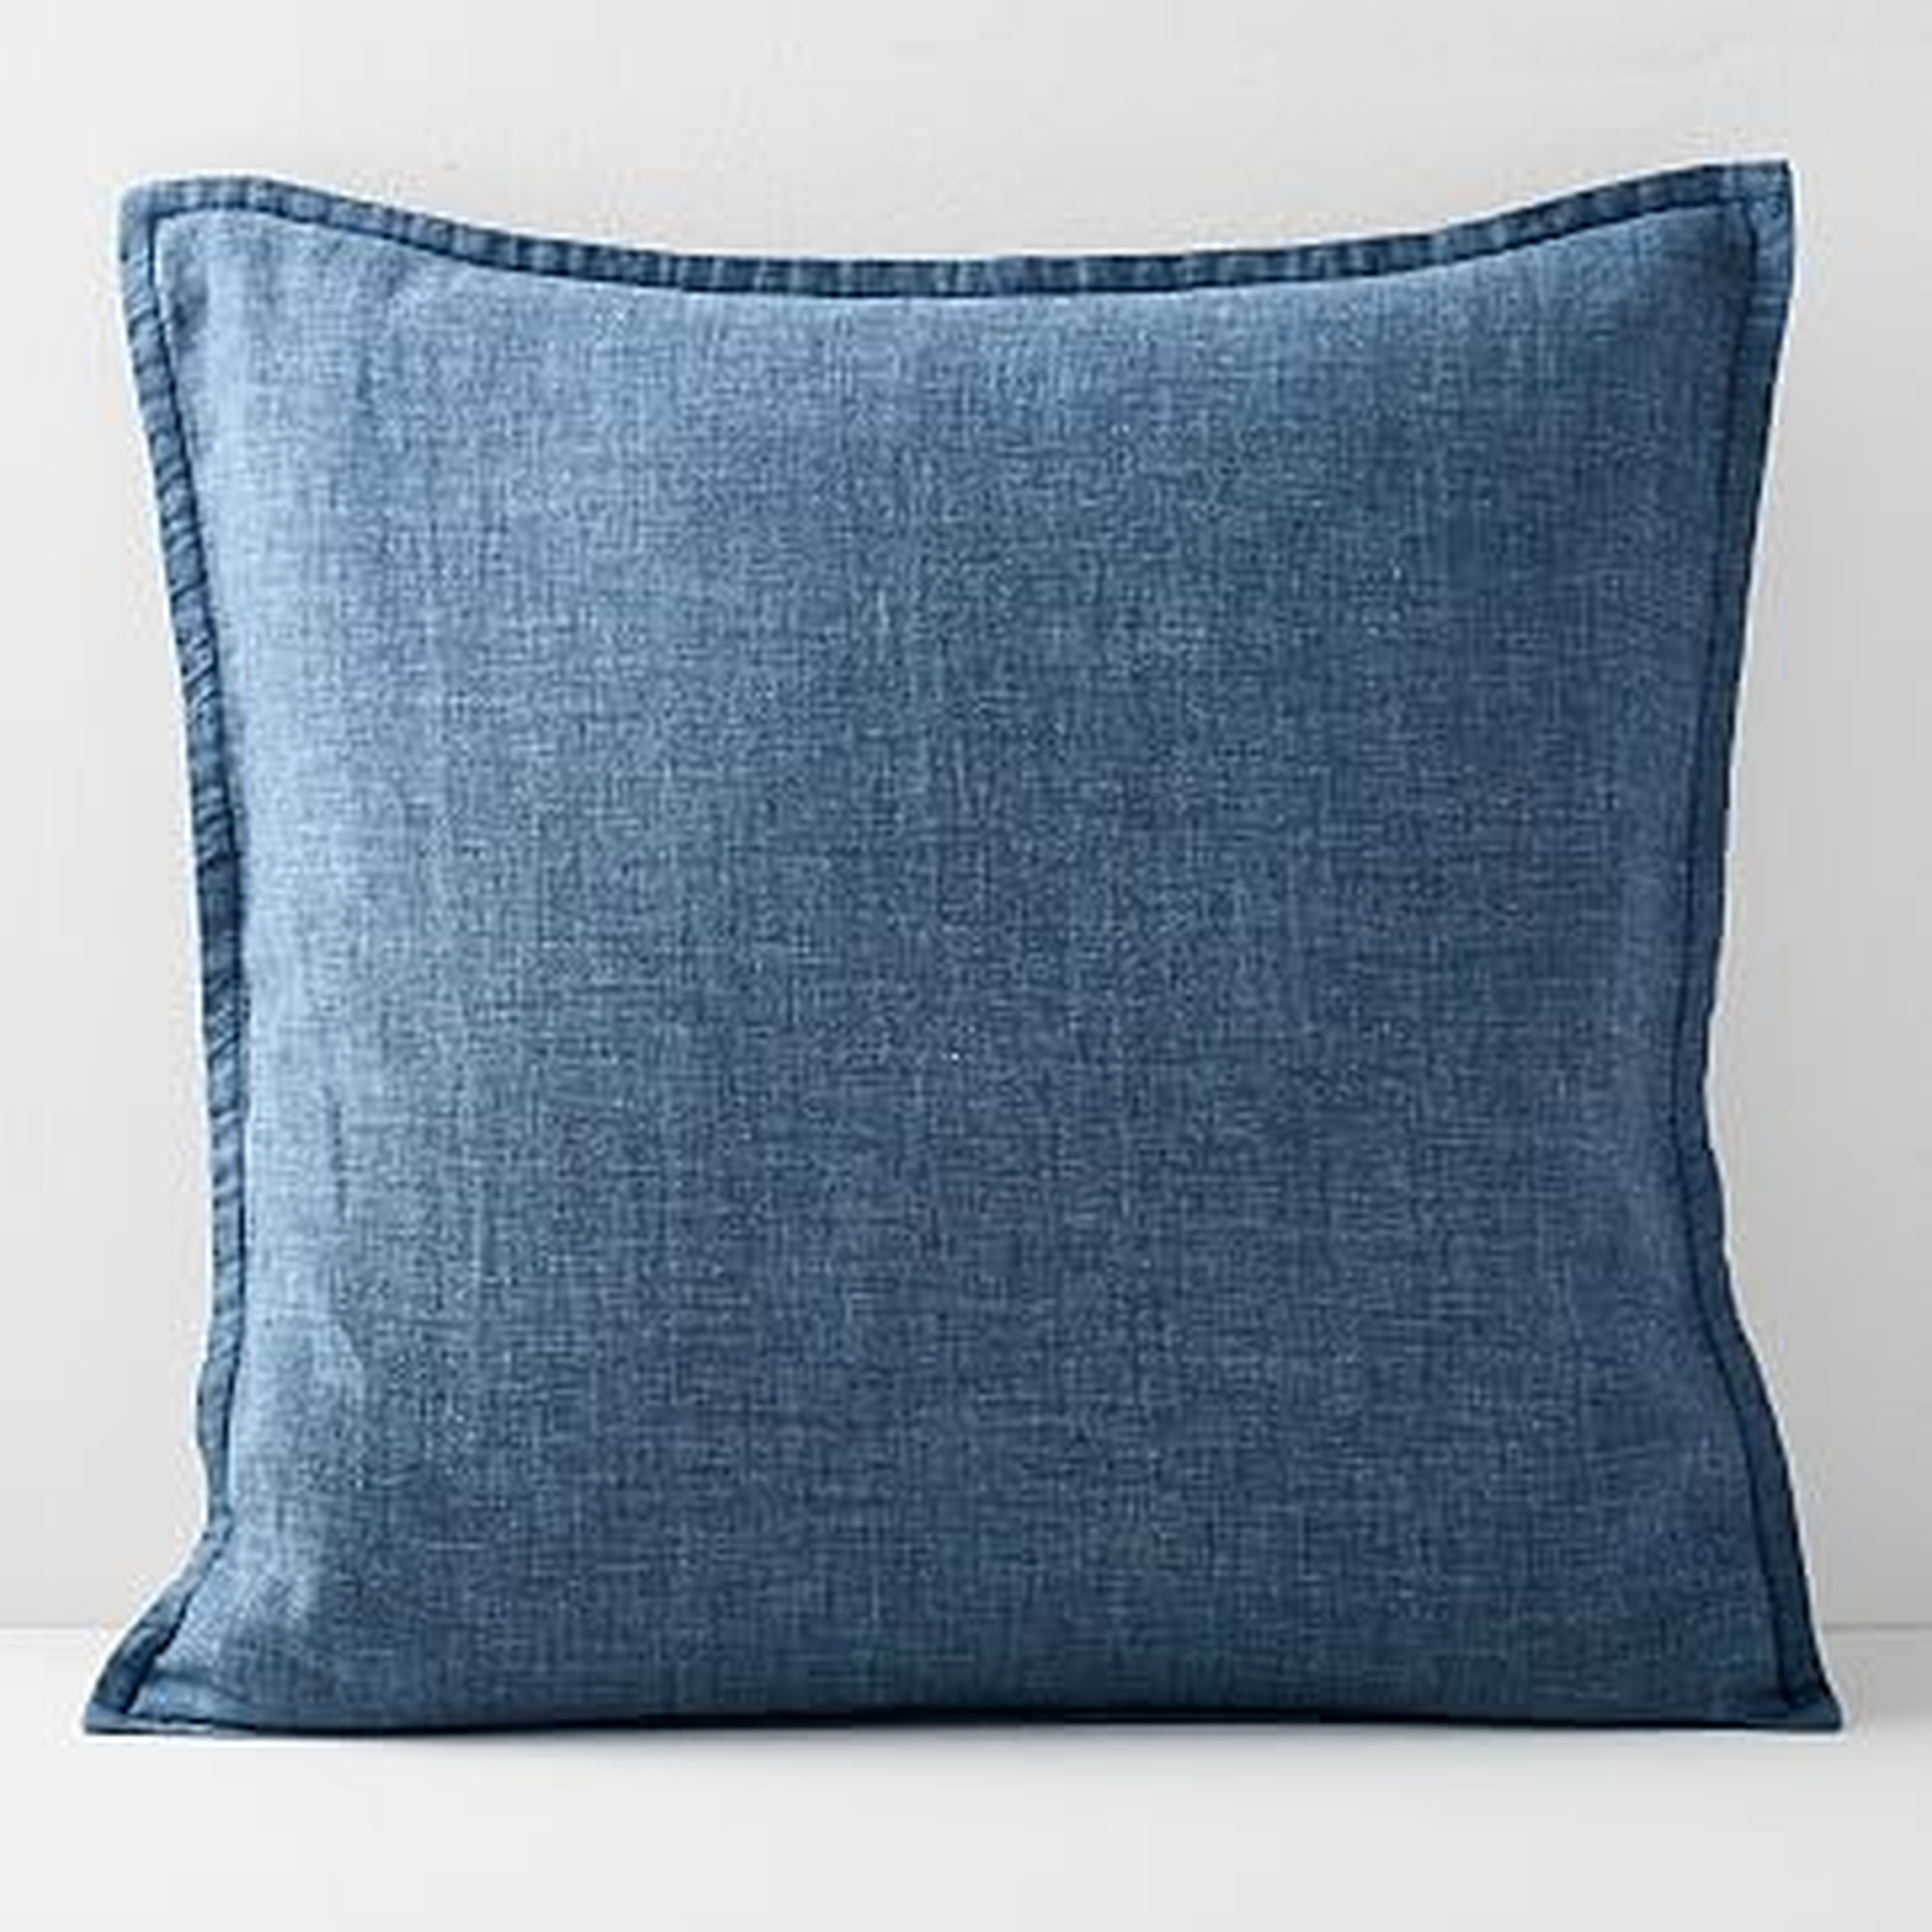 Belgian Flax Linen Pillow Cover, Indigo, 20"x20" - West Elm